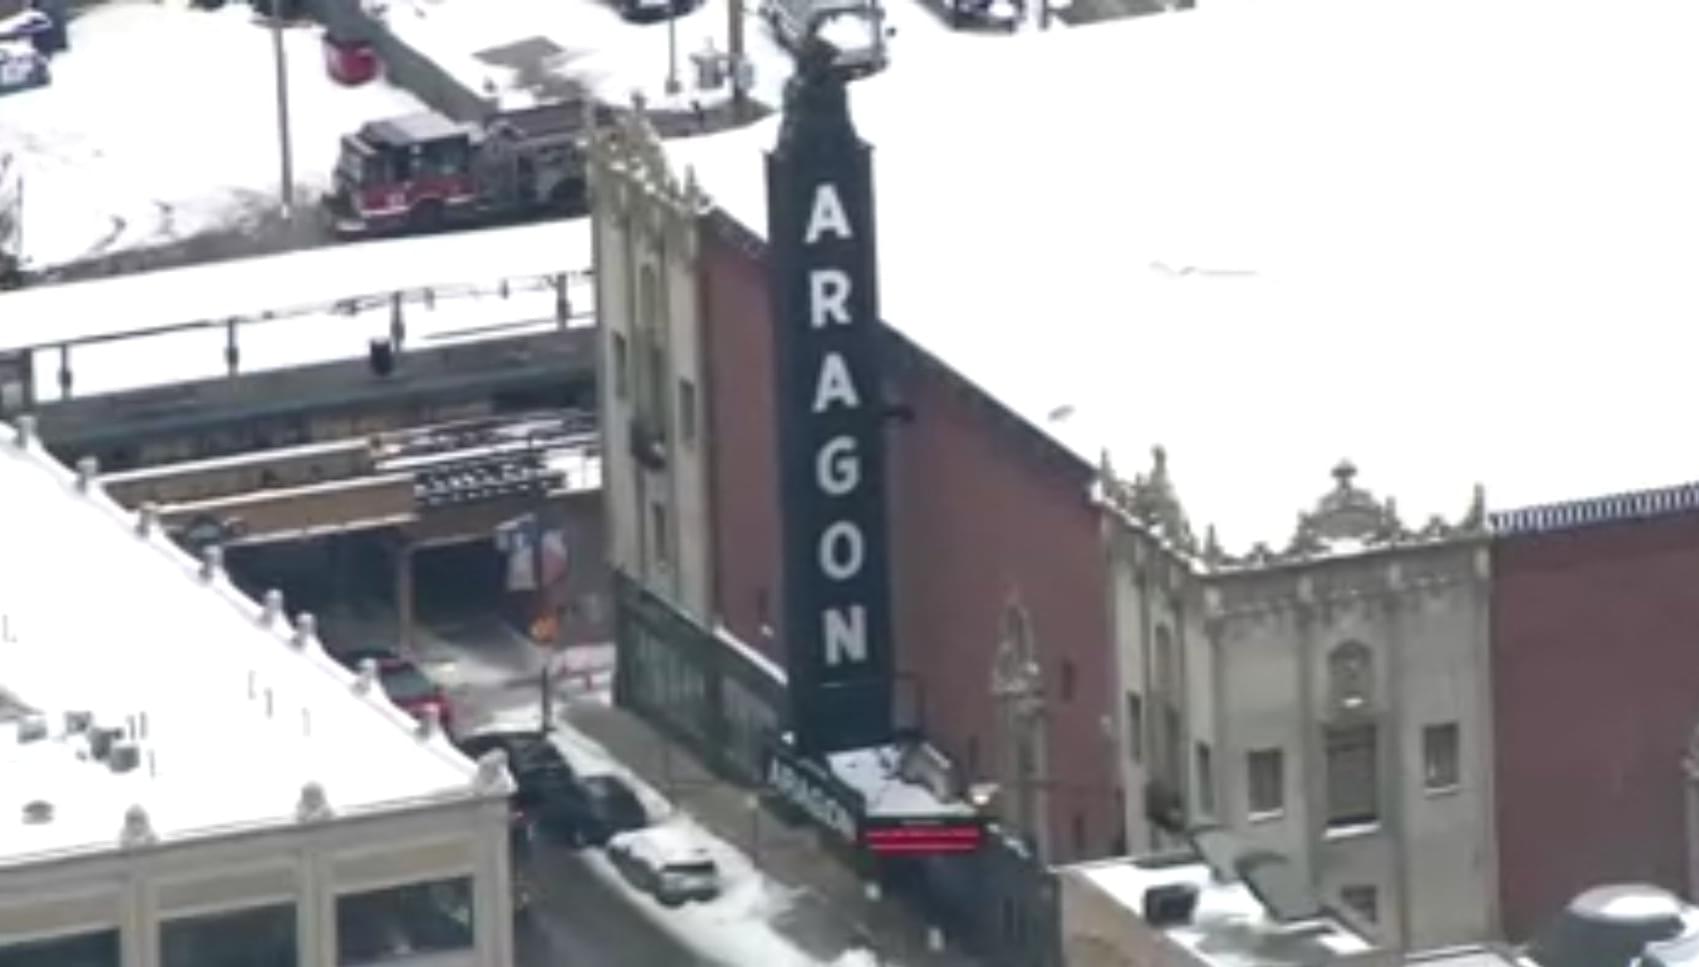 Aragon Ballroom’s exterior wall partially collapses